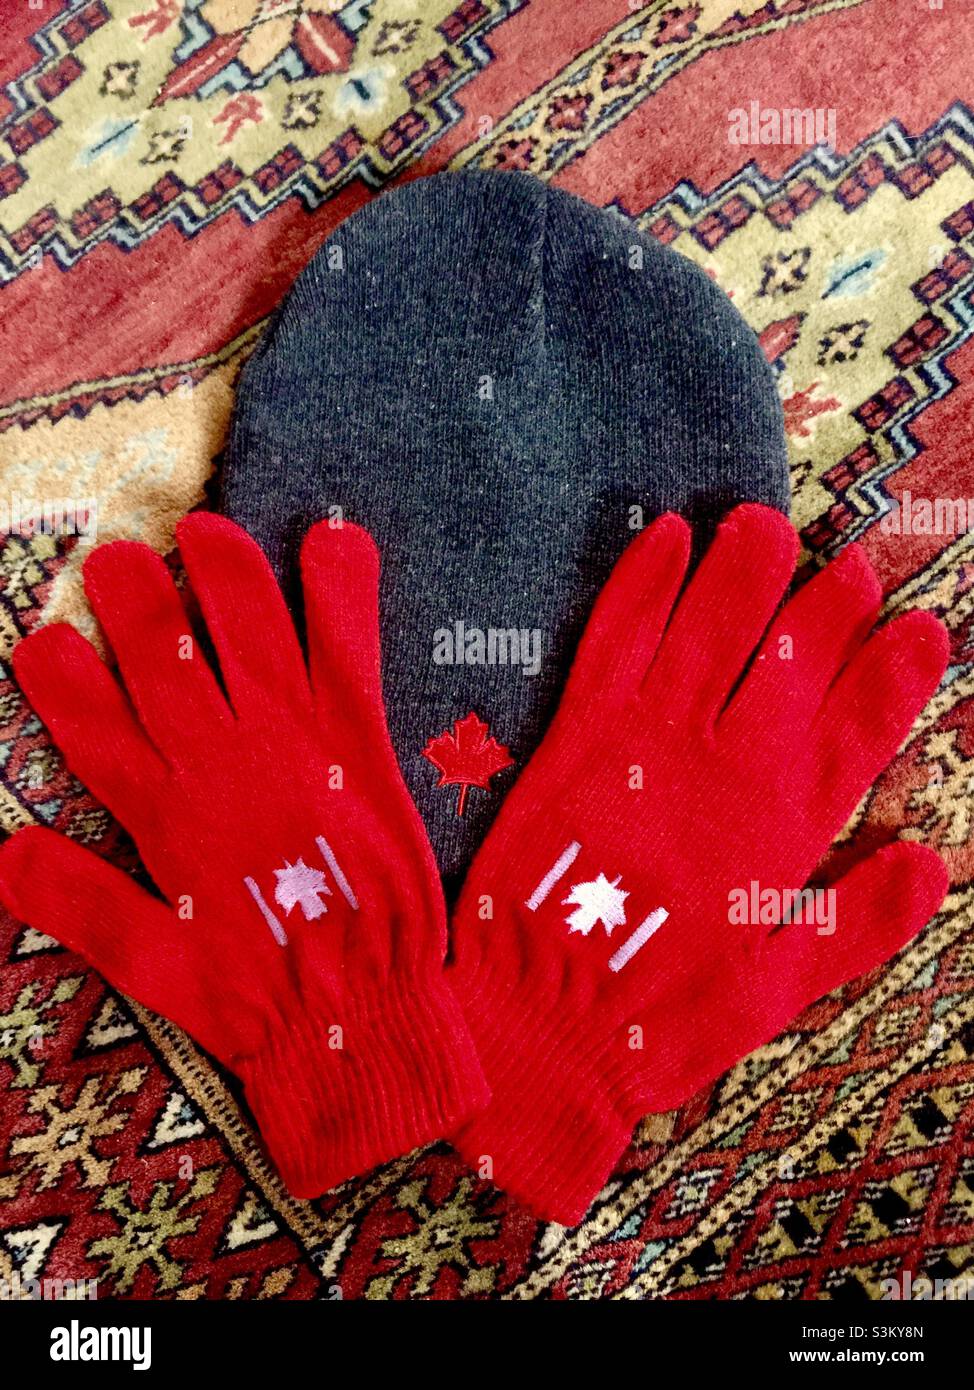 Bereit für den Winter. Kanadisches Ahornblatt-Emblem auf Handschuhen und Hut. Auf orientalischen Teppichtischdecken arrangiert. Warme Töne und Design. Stockfoto